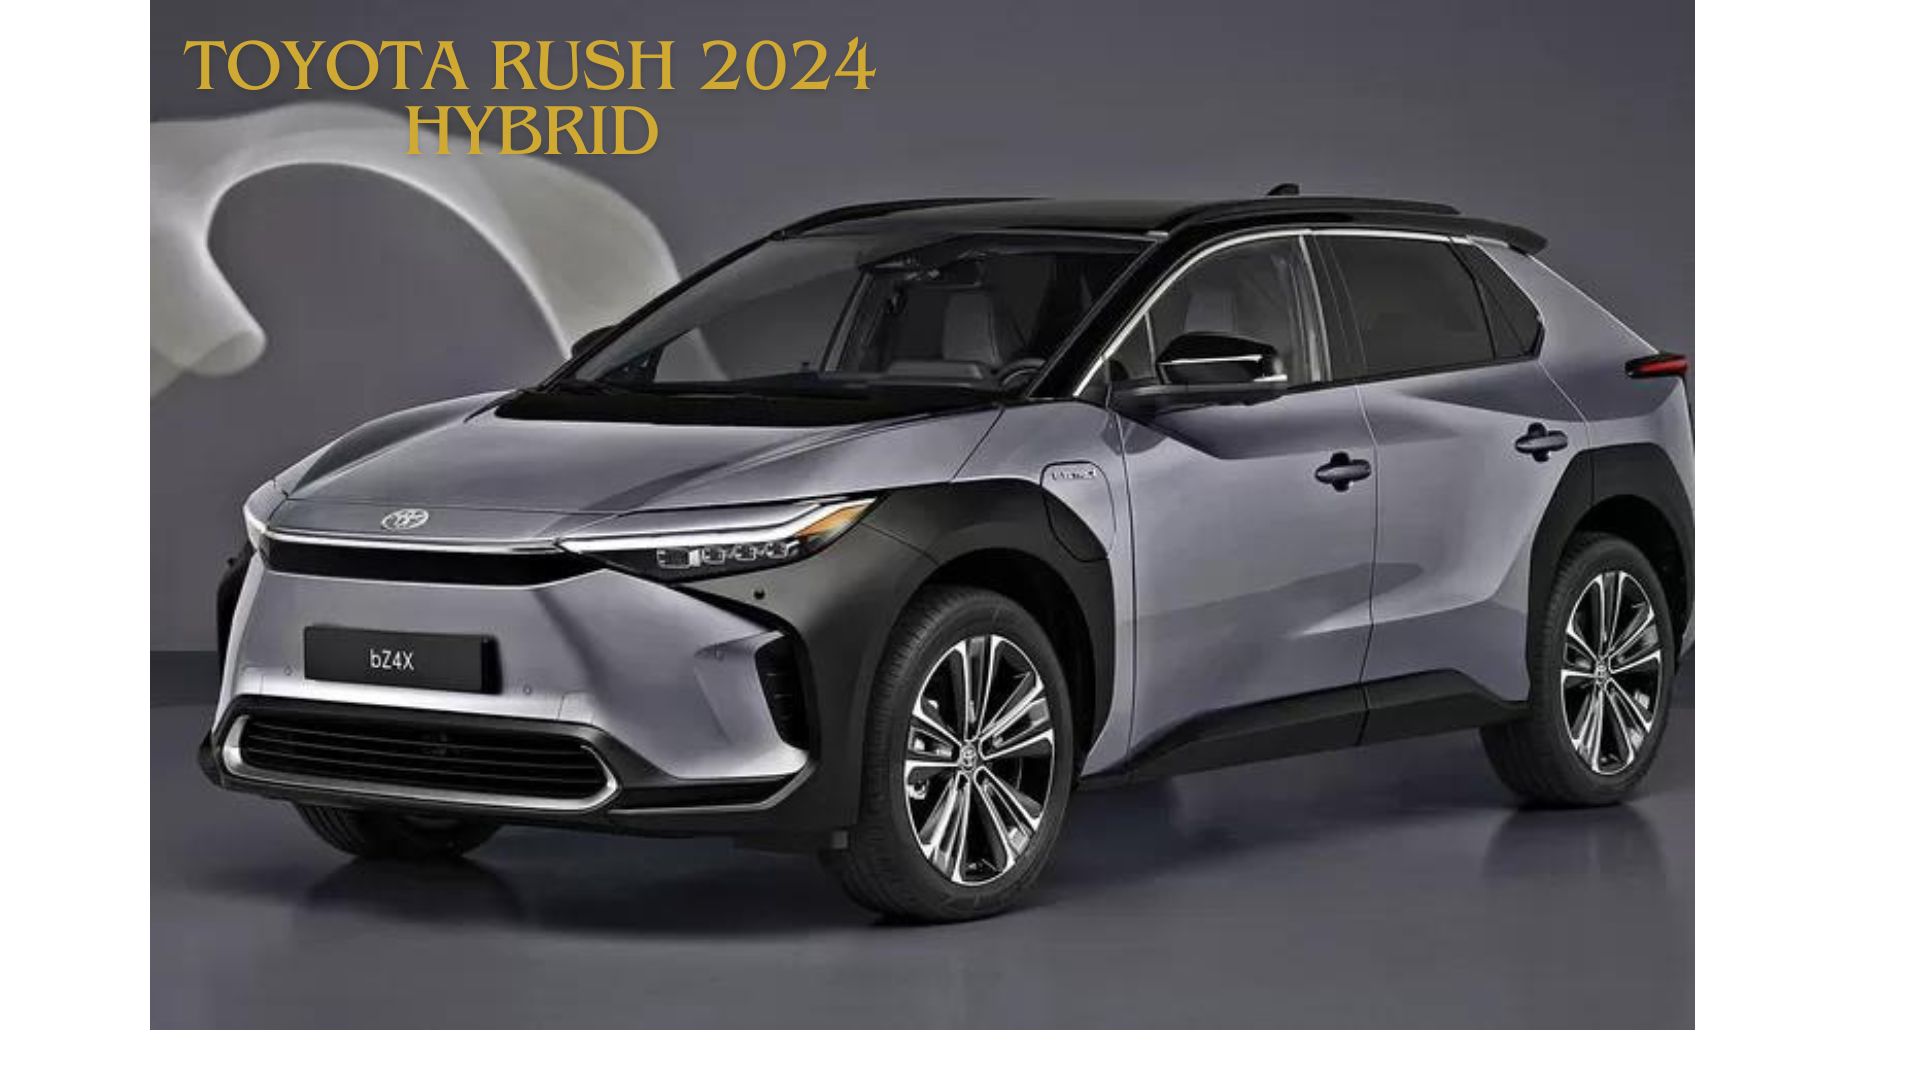 Berubah Drastis, Toyota Rush 2024 Hybrid Jadi Lebih Mewah dan Bertenaga